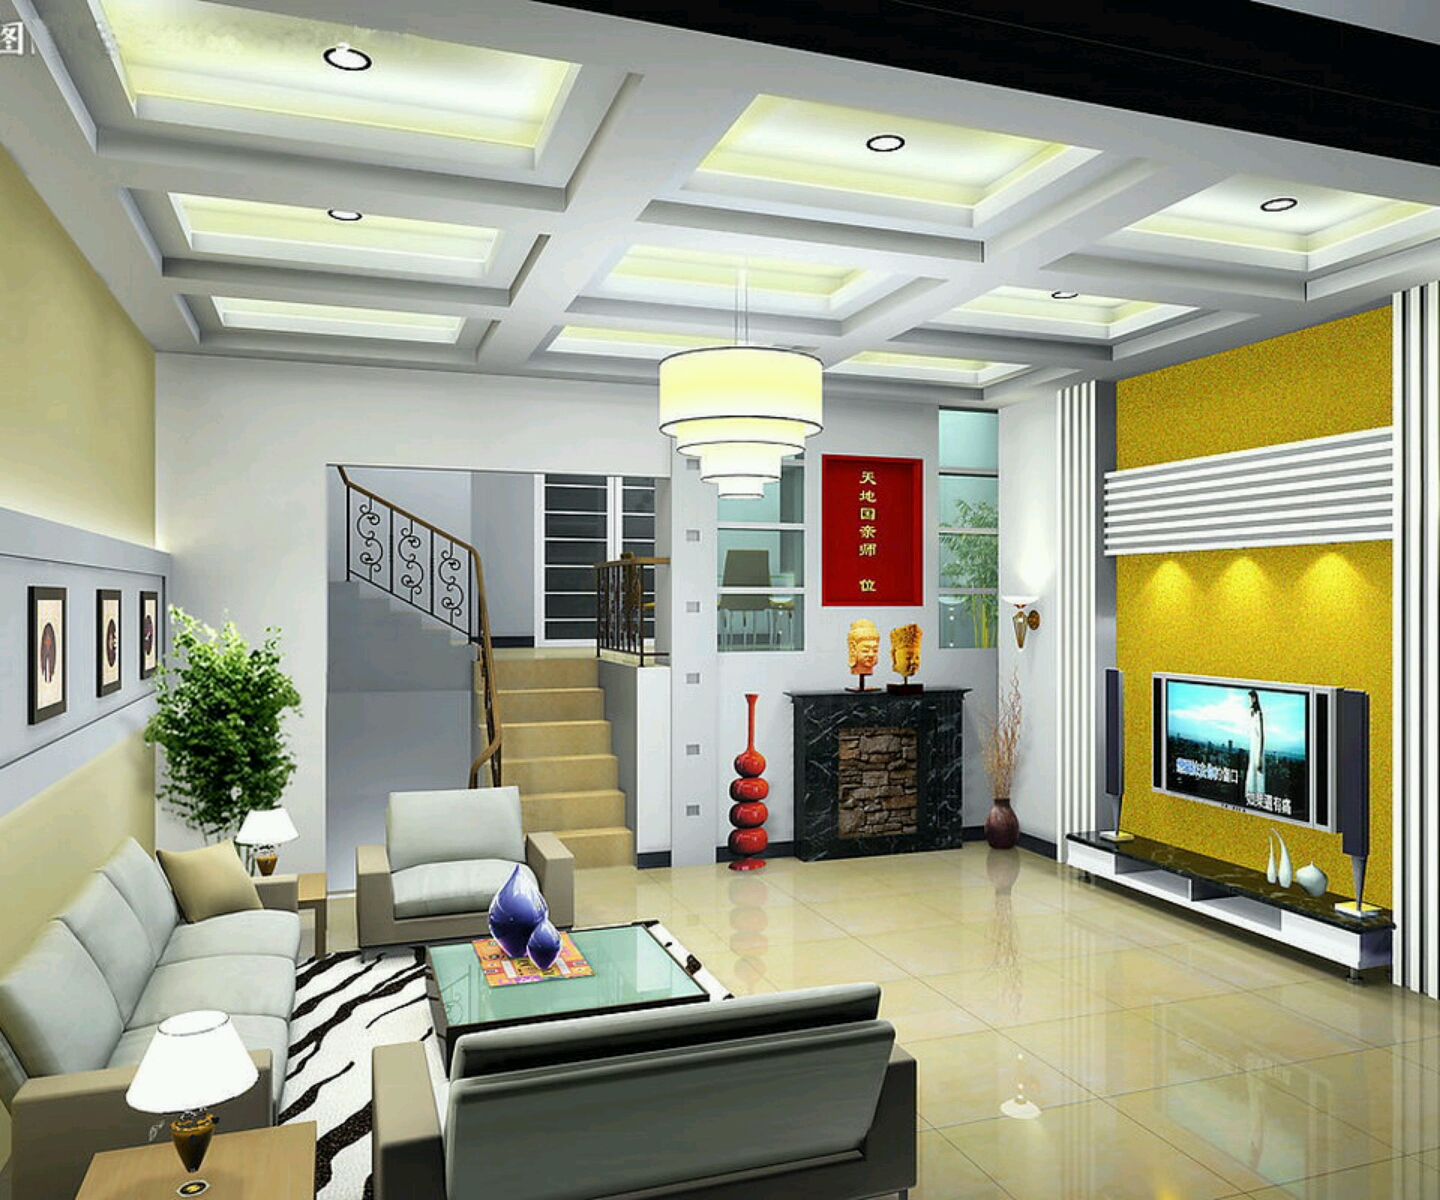 Ide Contoh Gambar Desain Interior Rumah Minimalis 2014 